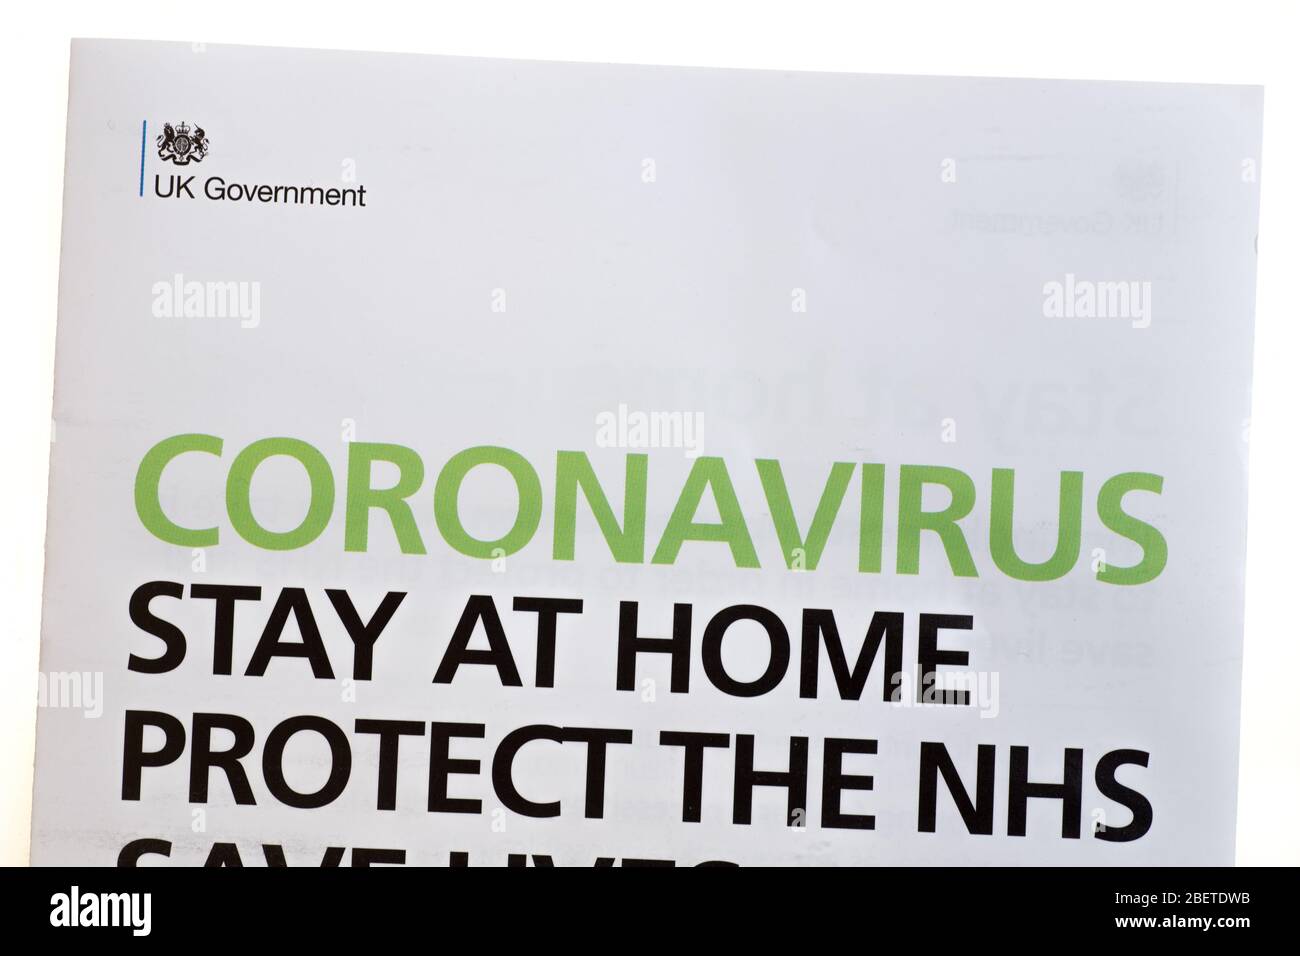 Lettera del governo britannico sul coronavirus durante la pandemia del 2020 Foto Stock